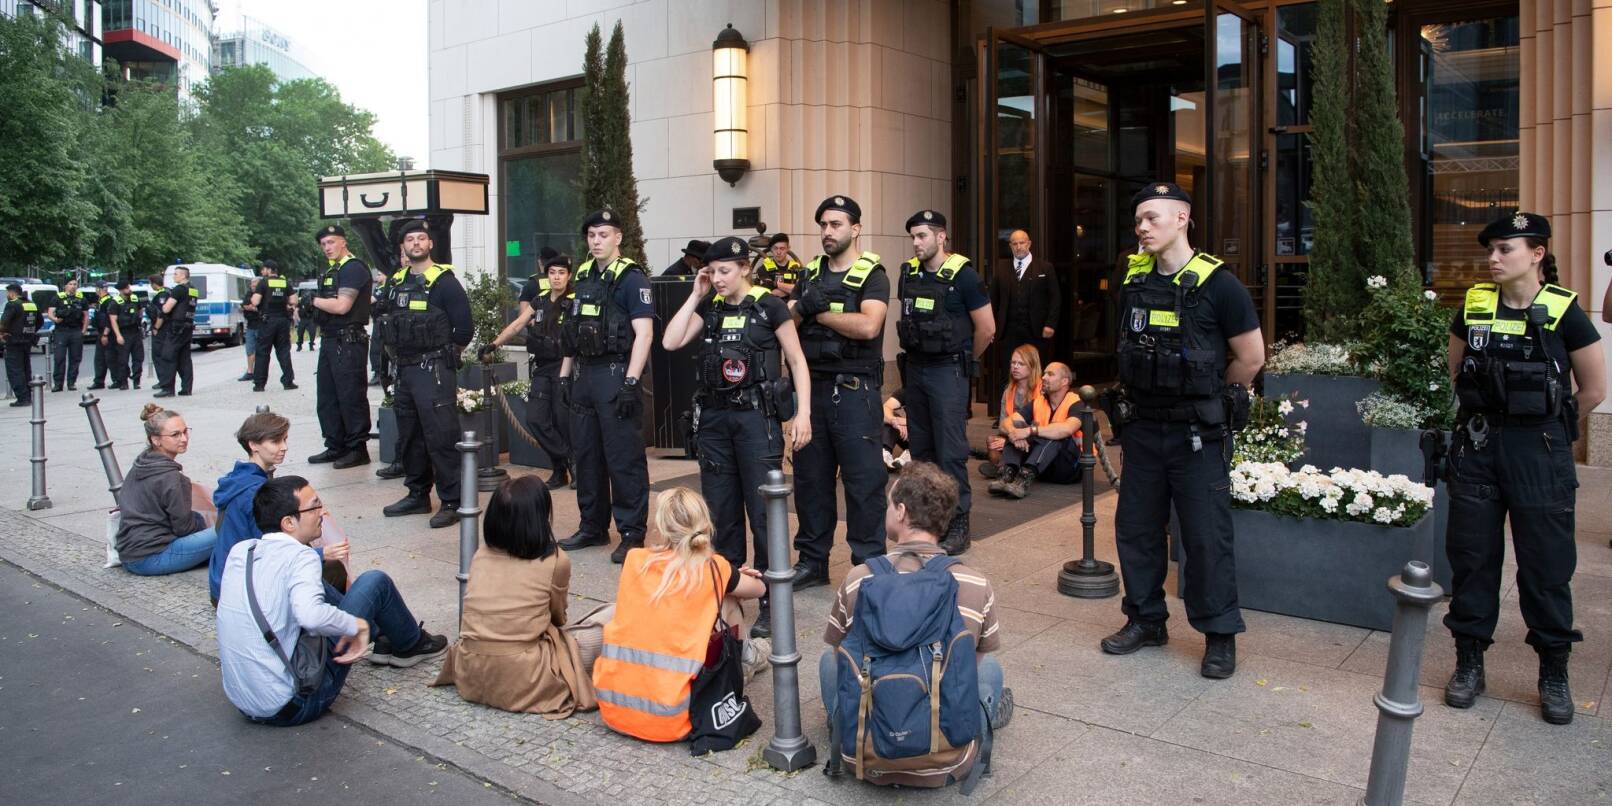 Polizeieinsatz am Haupteingang des Hotels Ritz-Carlton in Berlin, wo eine Protestaktion von Klima-Demonstranten stattfindet.